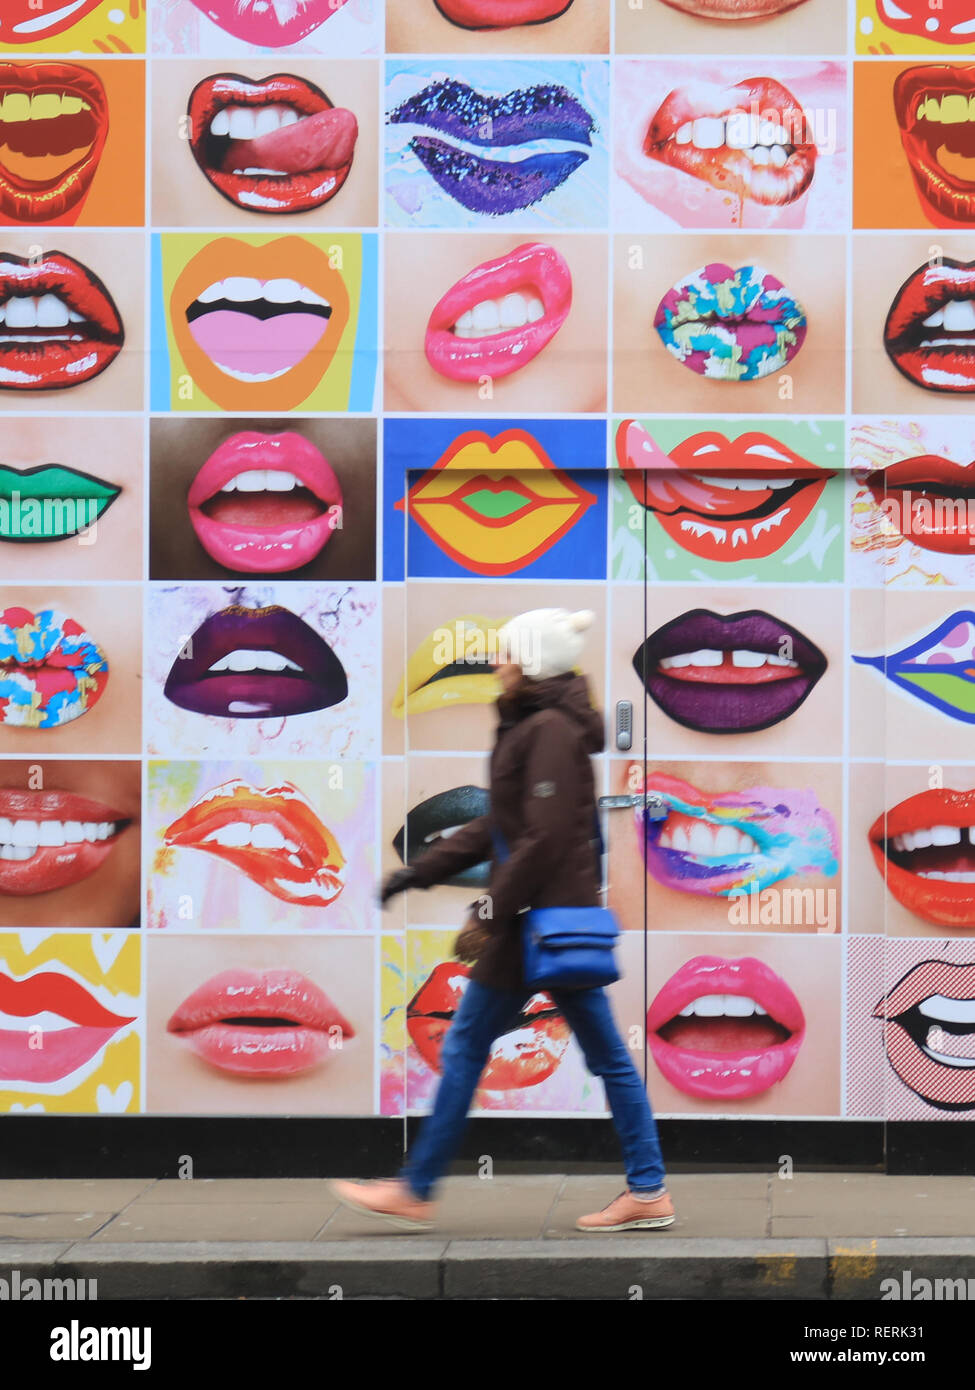 Londres, Reino Unido. 23 de enero de 2019. Los peatones atravesar un mural en Wimbledon High Street con labios humanos en un frío día de invierno con temperaturas previsto para permanecer por debajo del punto de congelación de crédito: amer ghazzal/Alamy Live News Foto de stock